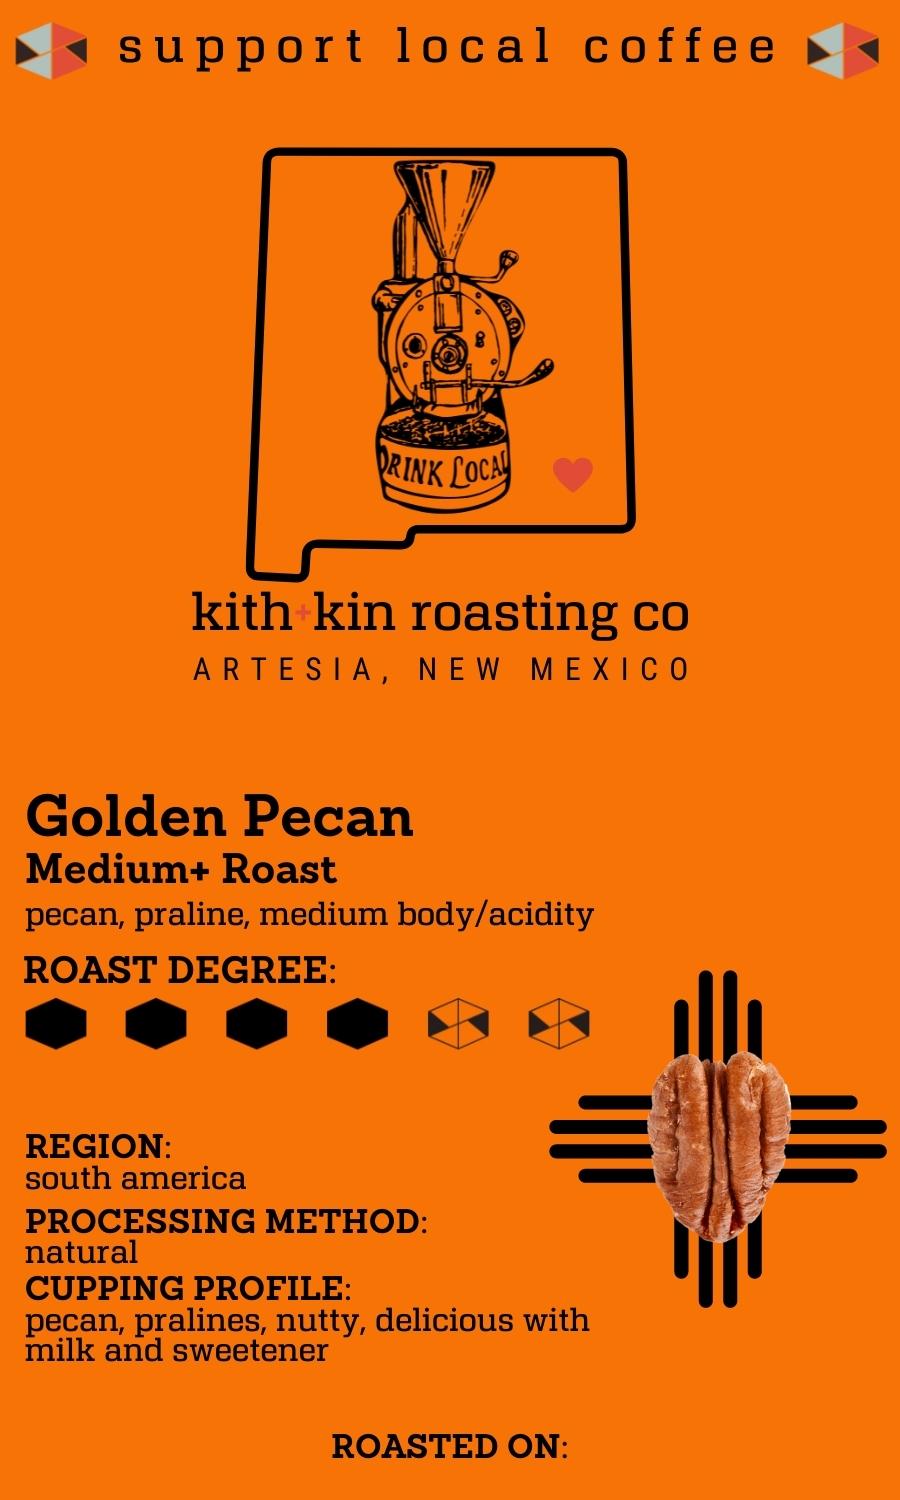 Golden Pecan Flavored Coffee (medium+ roast)